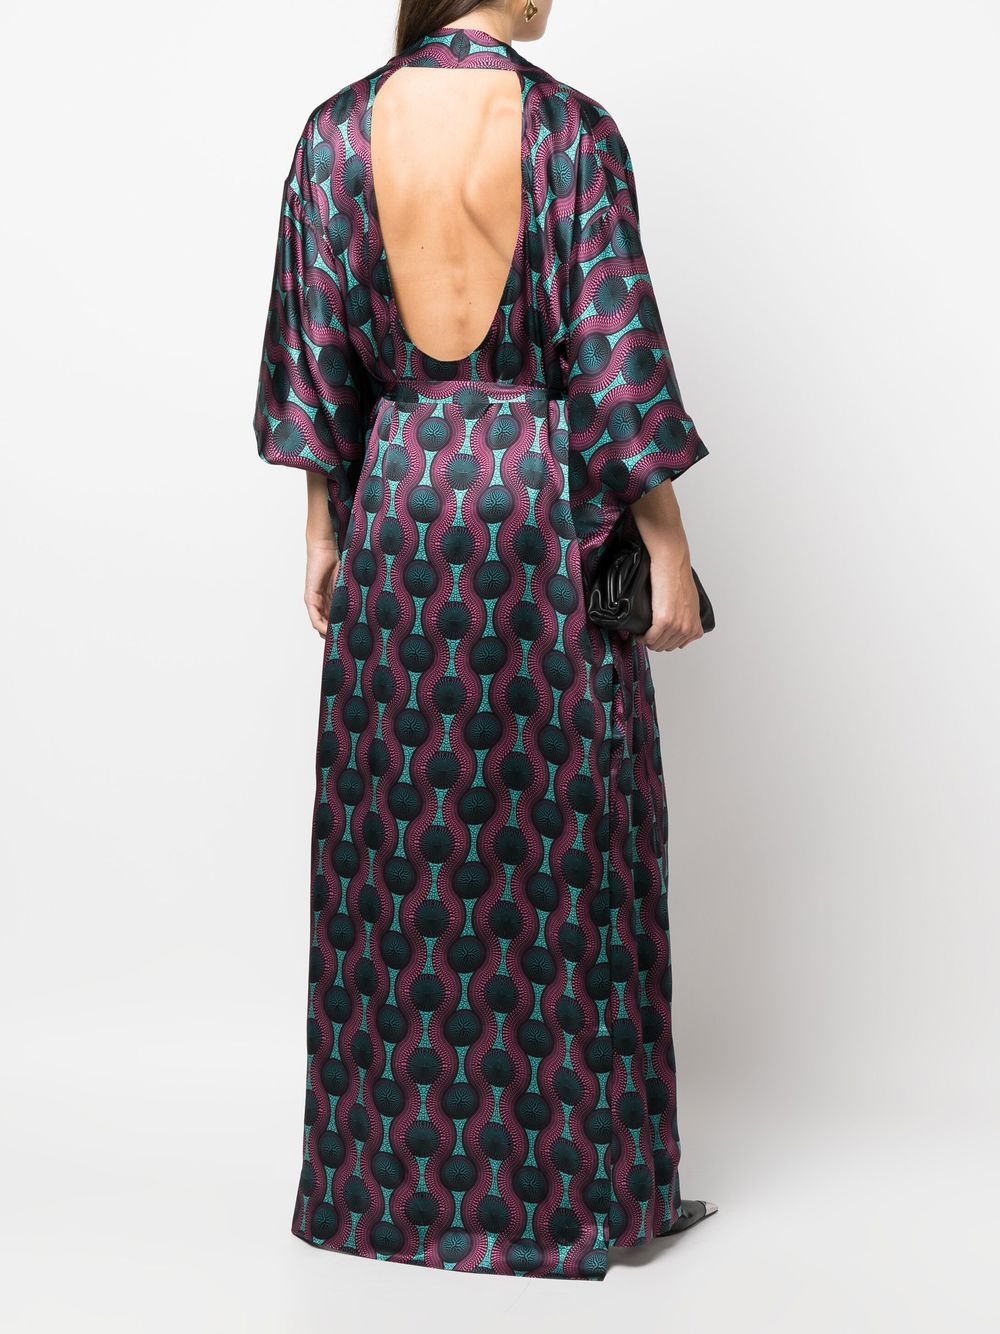 Ozwald boateng OZWALD BOATENG- Printed Silk Kimono Dress